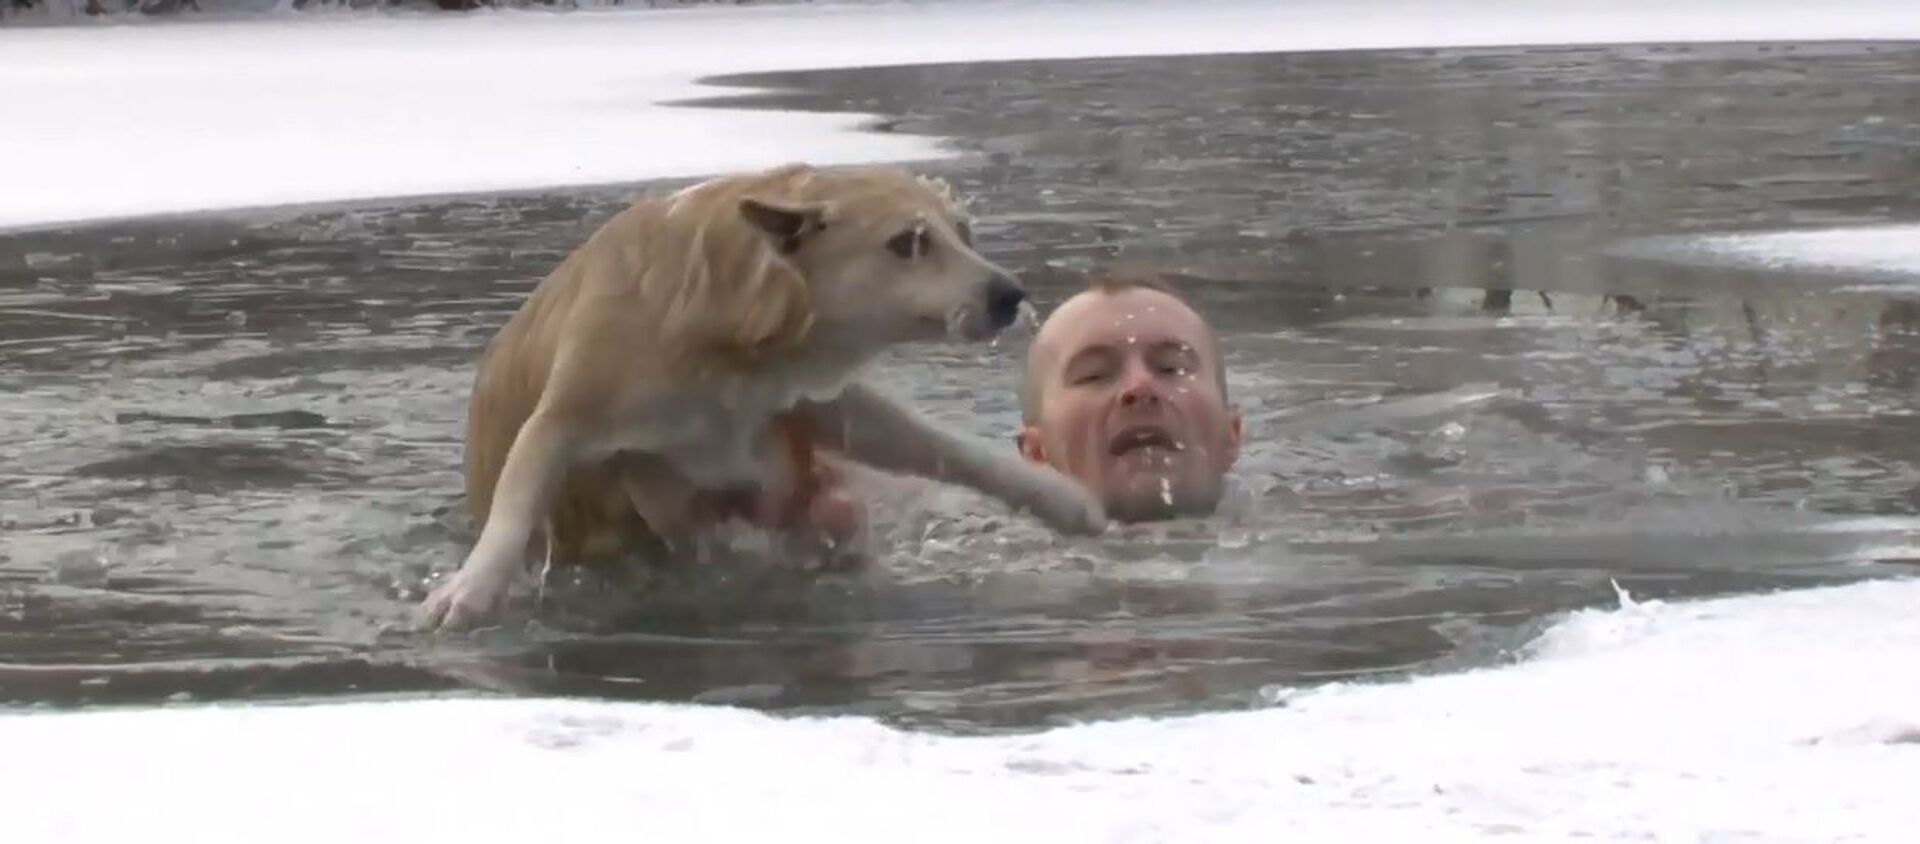 Rusya'da gazeteci çekim sırasında boğulmakta olan köpeği kurtardı - Sputnik Türkiye, 1920, 22.01.2021